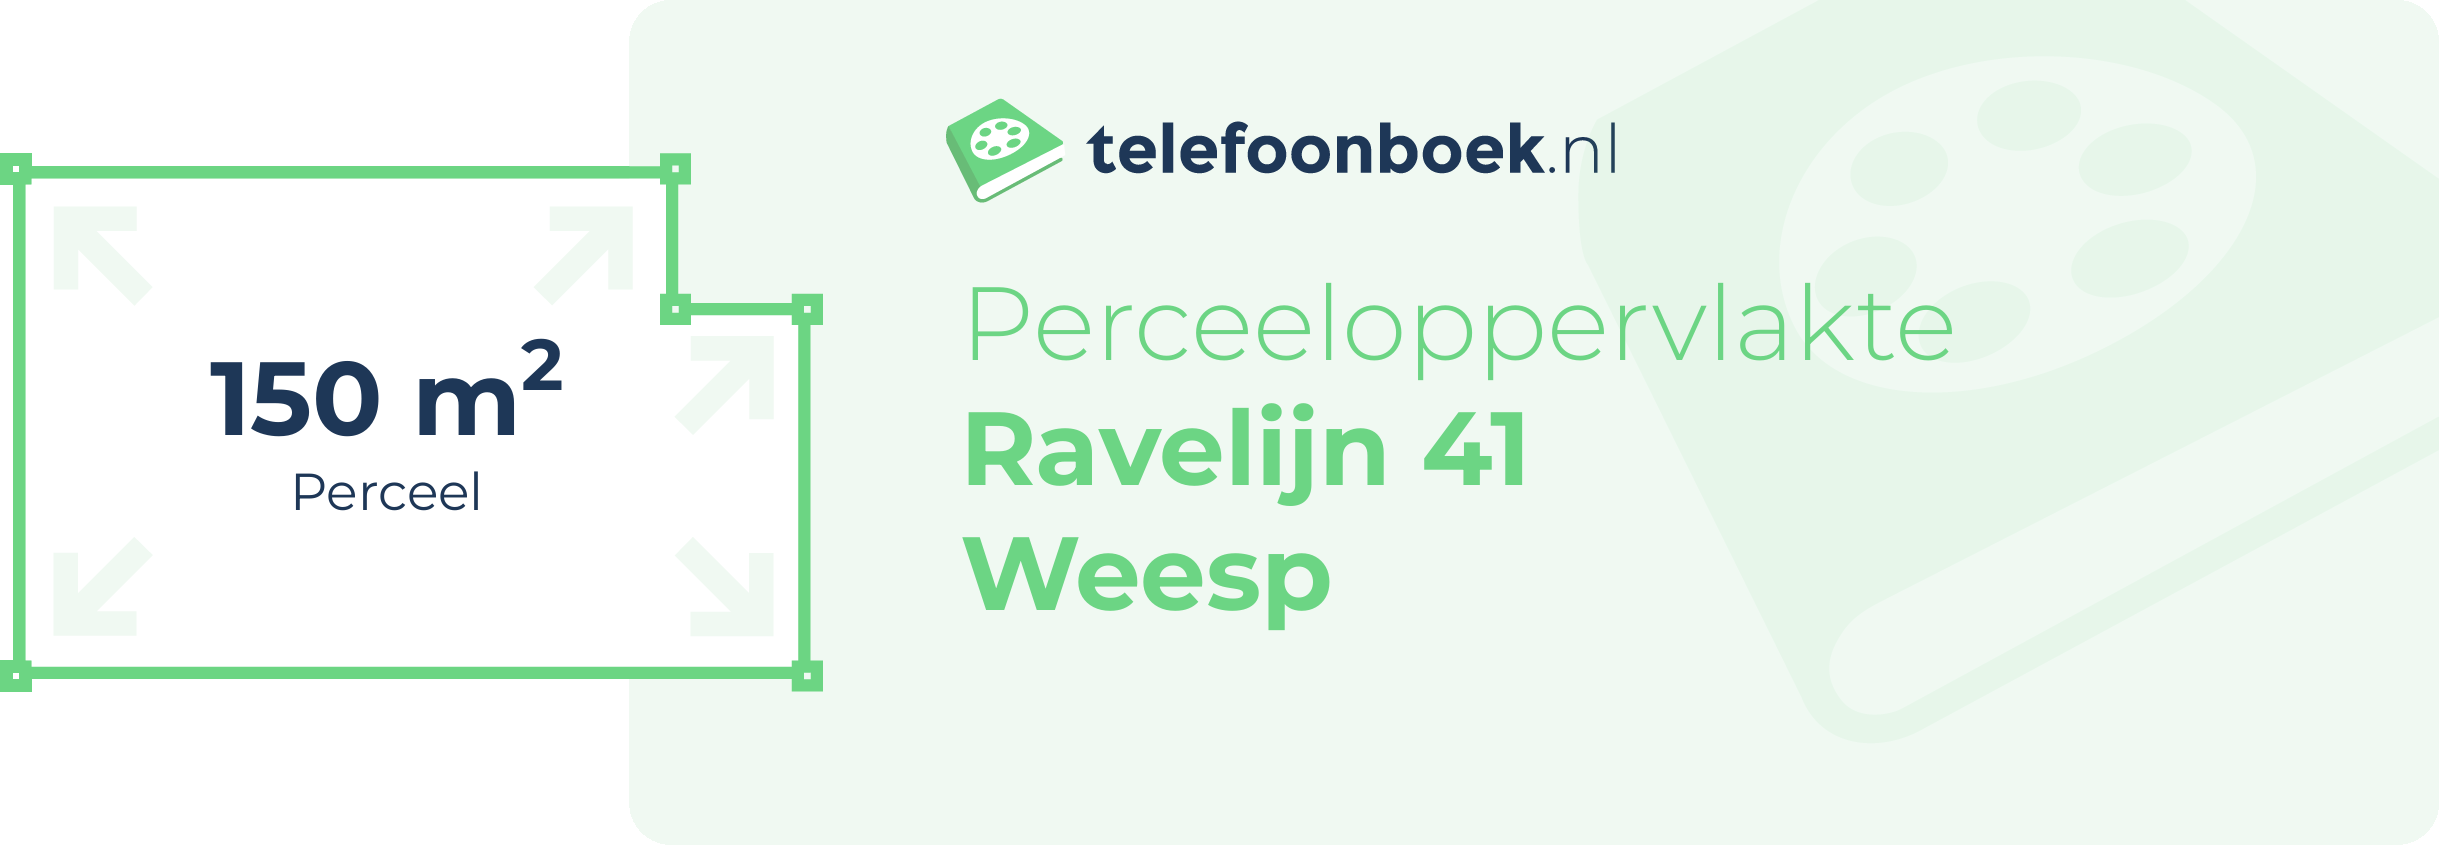 Perceeloppervlakte Ravelijn 41 Weesp